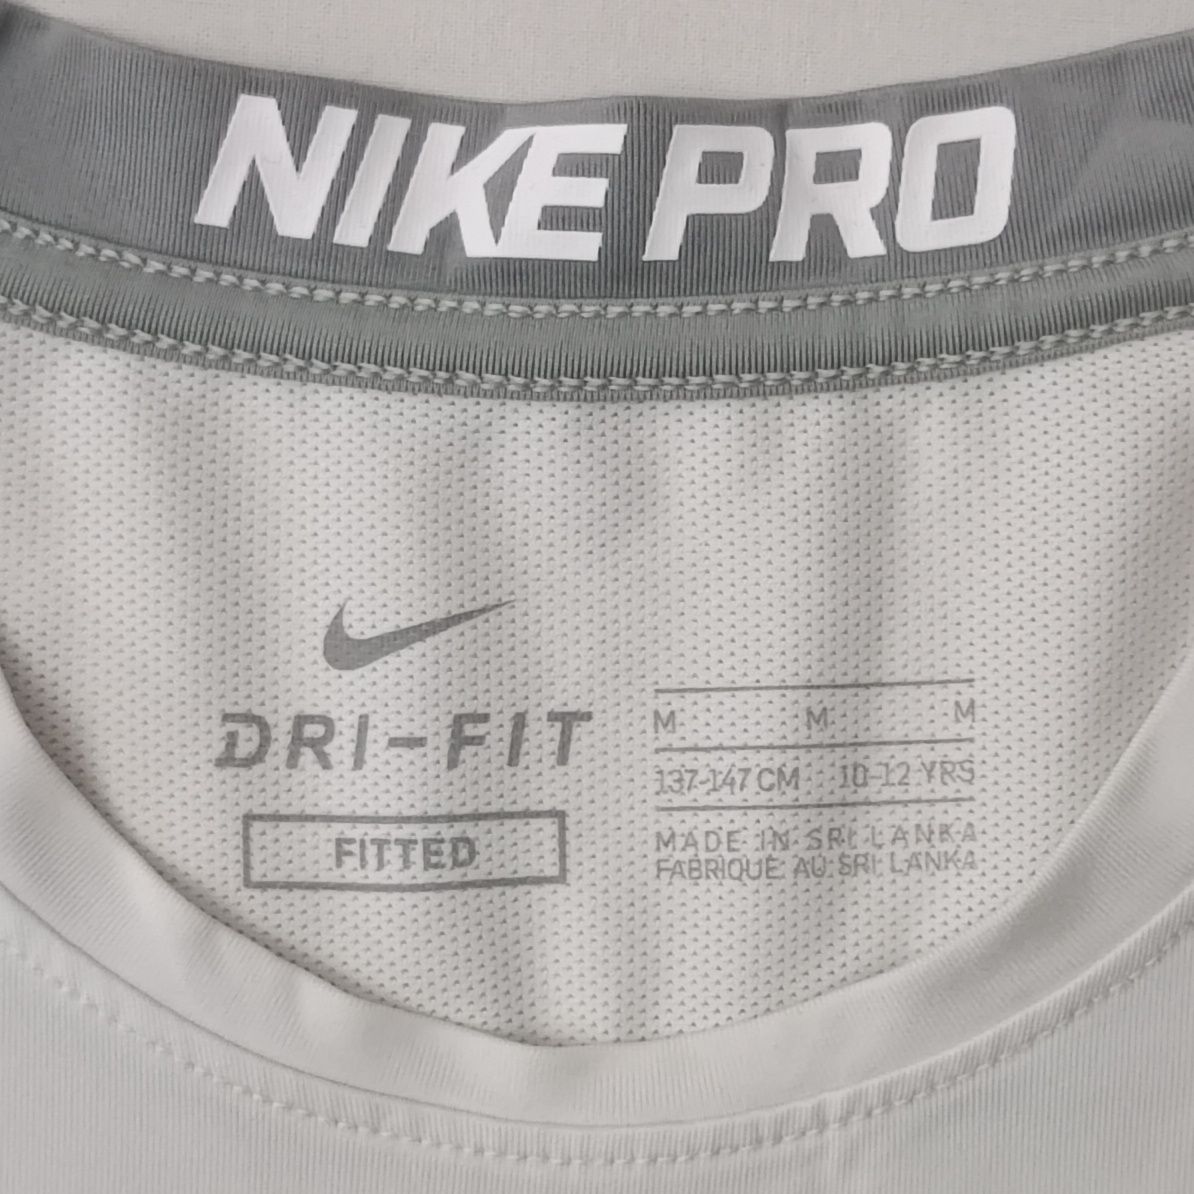 Nike PRO DRI-FIT Fitted Tee оригинална тениска ръст 137-147см Найк